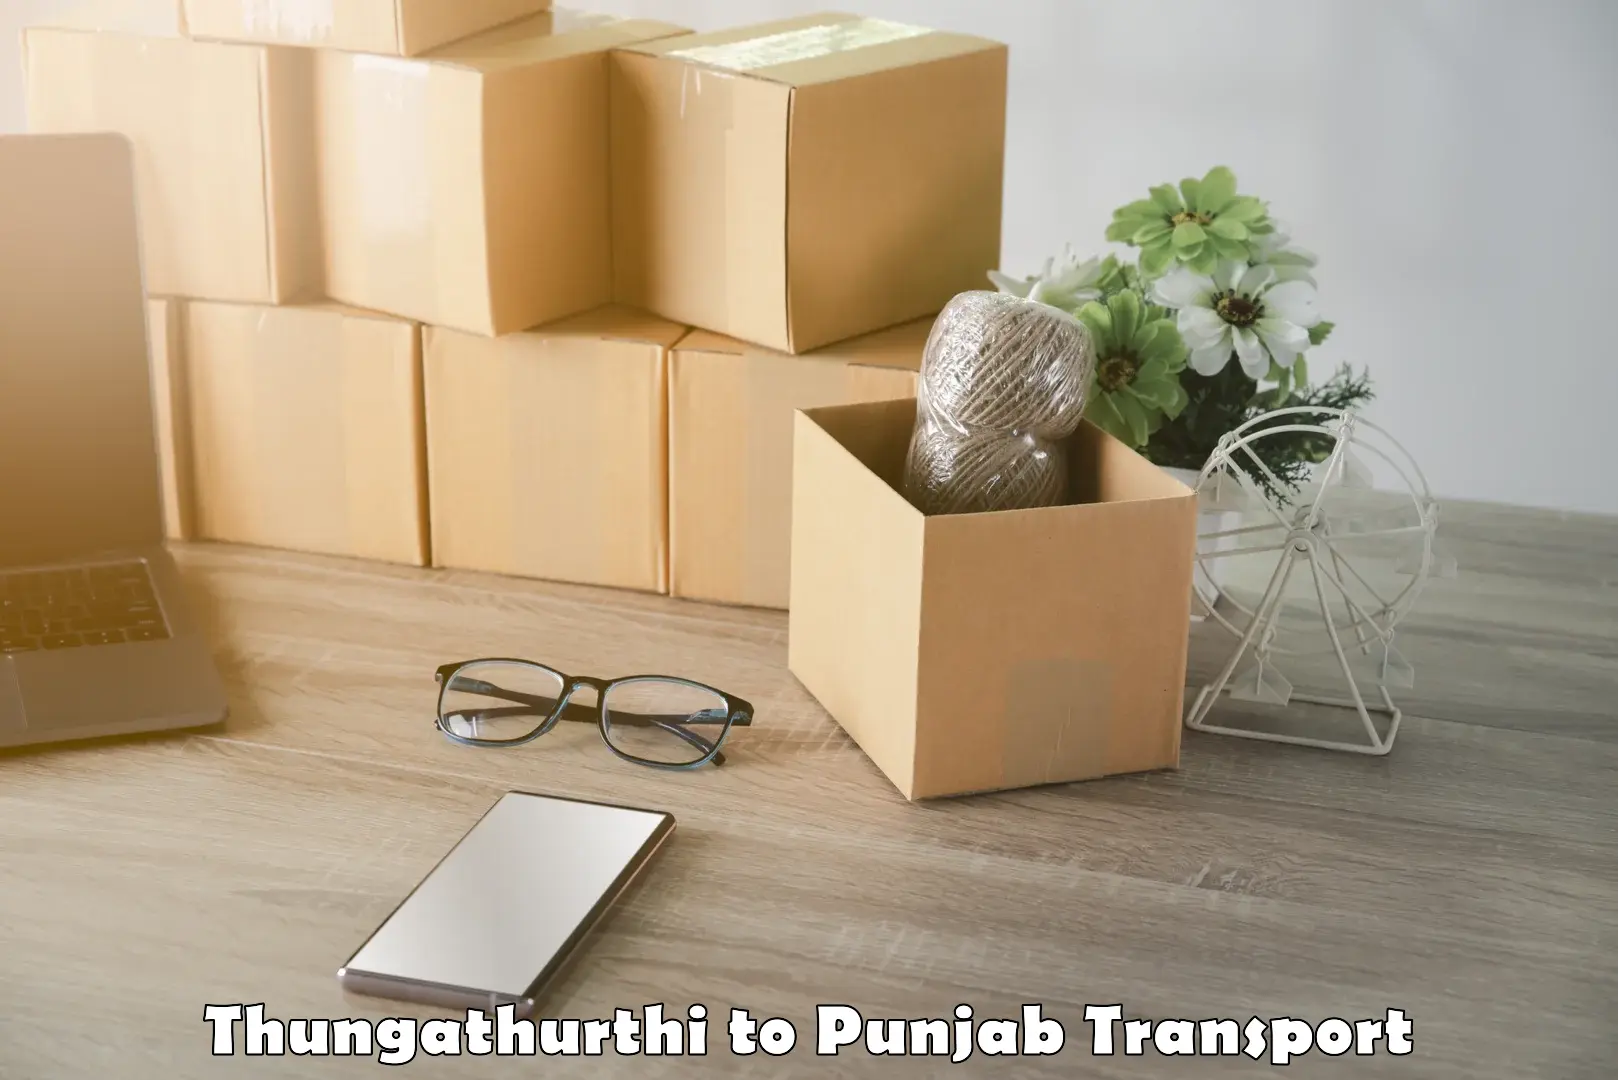 All India transport service Thungathurthi to Phagwara